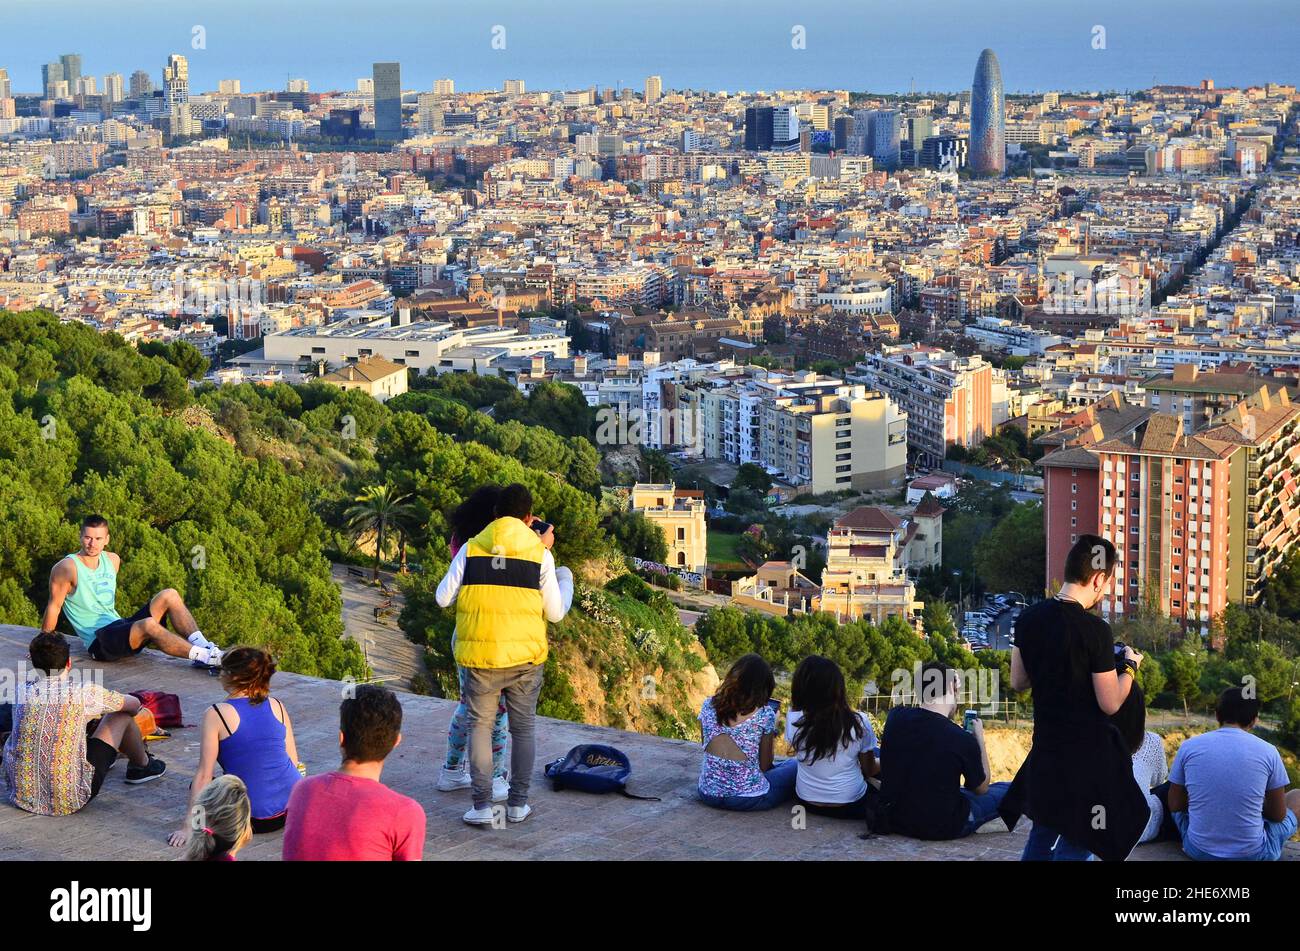 Junge Menschen genießen den abendlichen Blick über die Stadt Barcelona vom Hügel Turo de la Rovira, Barcelona Katalonien Spanien. Stockfoto